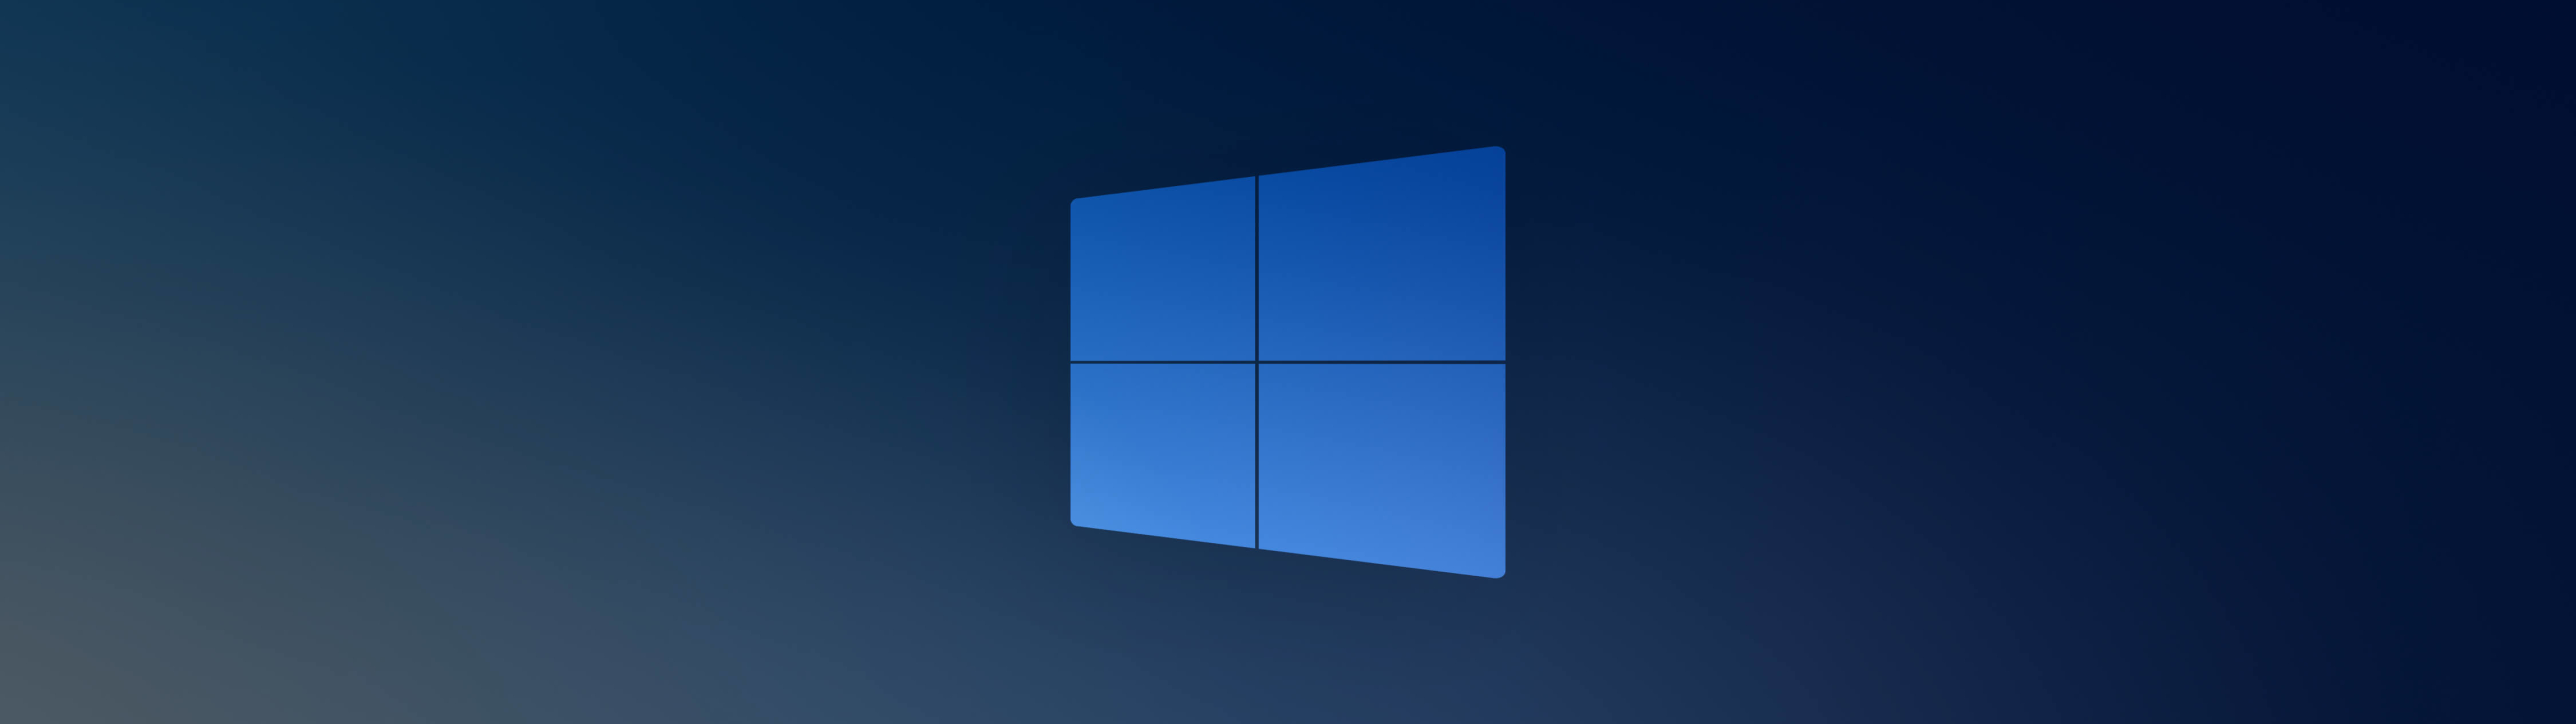 5120x1440 Windows 10x Blue Logo 5120x1440 Resolution Wallpaper Hd Hi